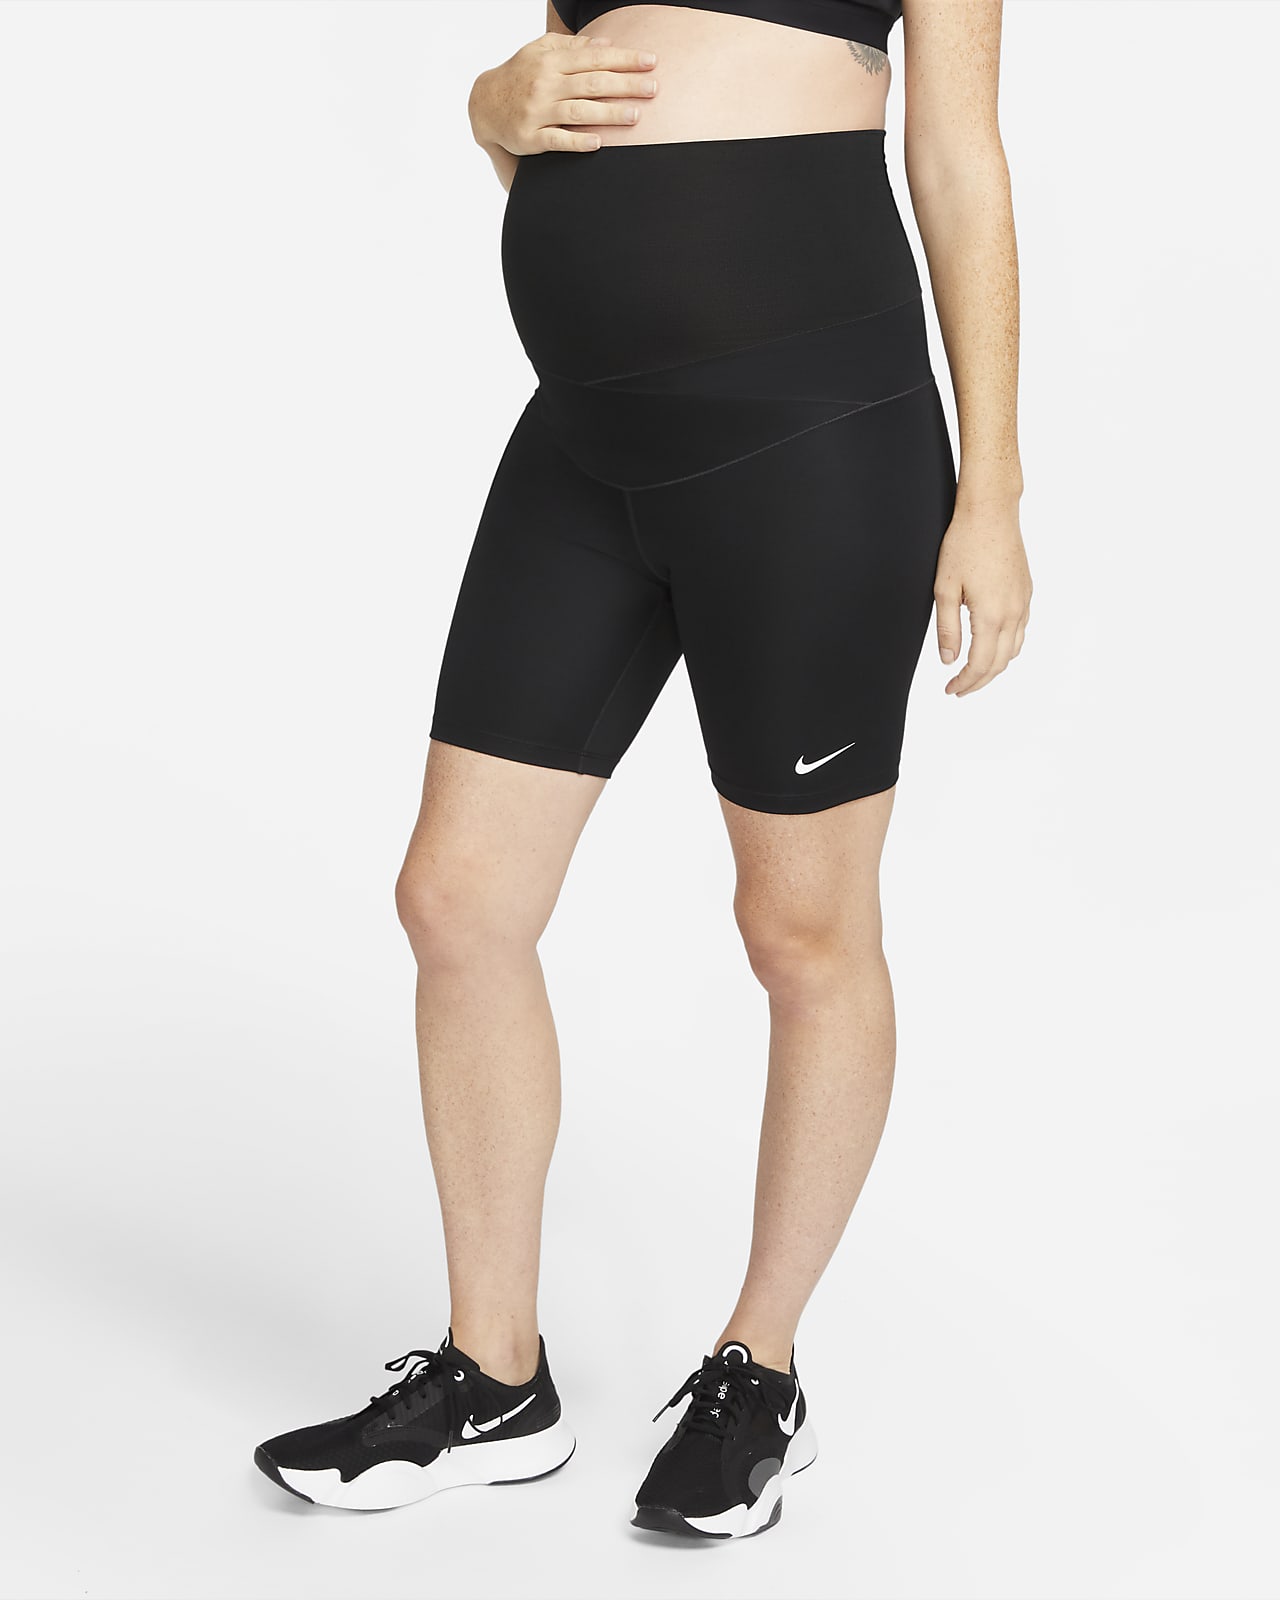 Cycliste Nike One (M) 18 cm pour femme (maternité)